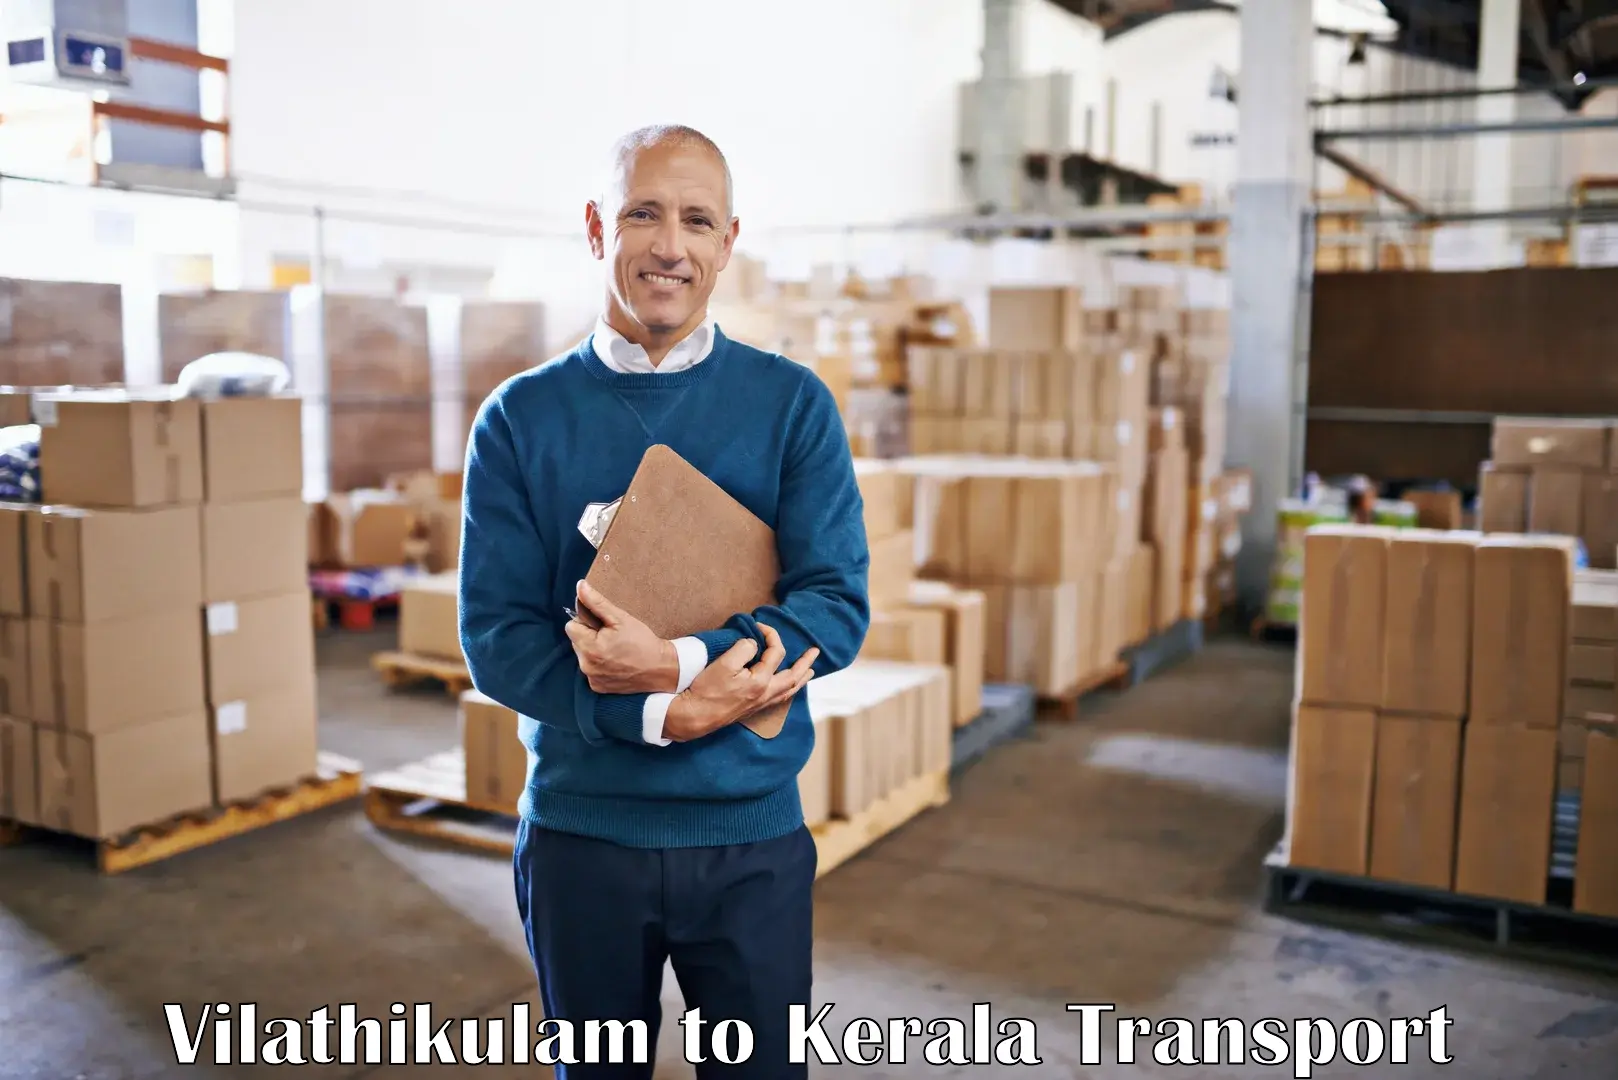 Commercial transport service Vilathikulam to Kozhikode